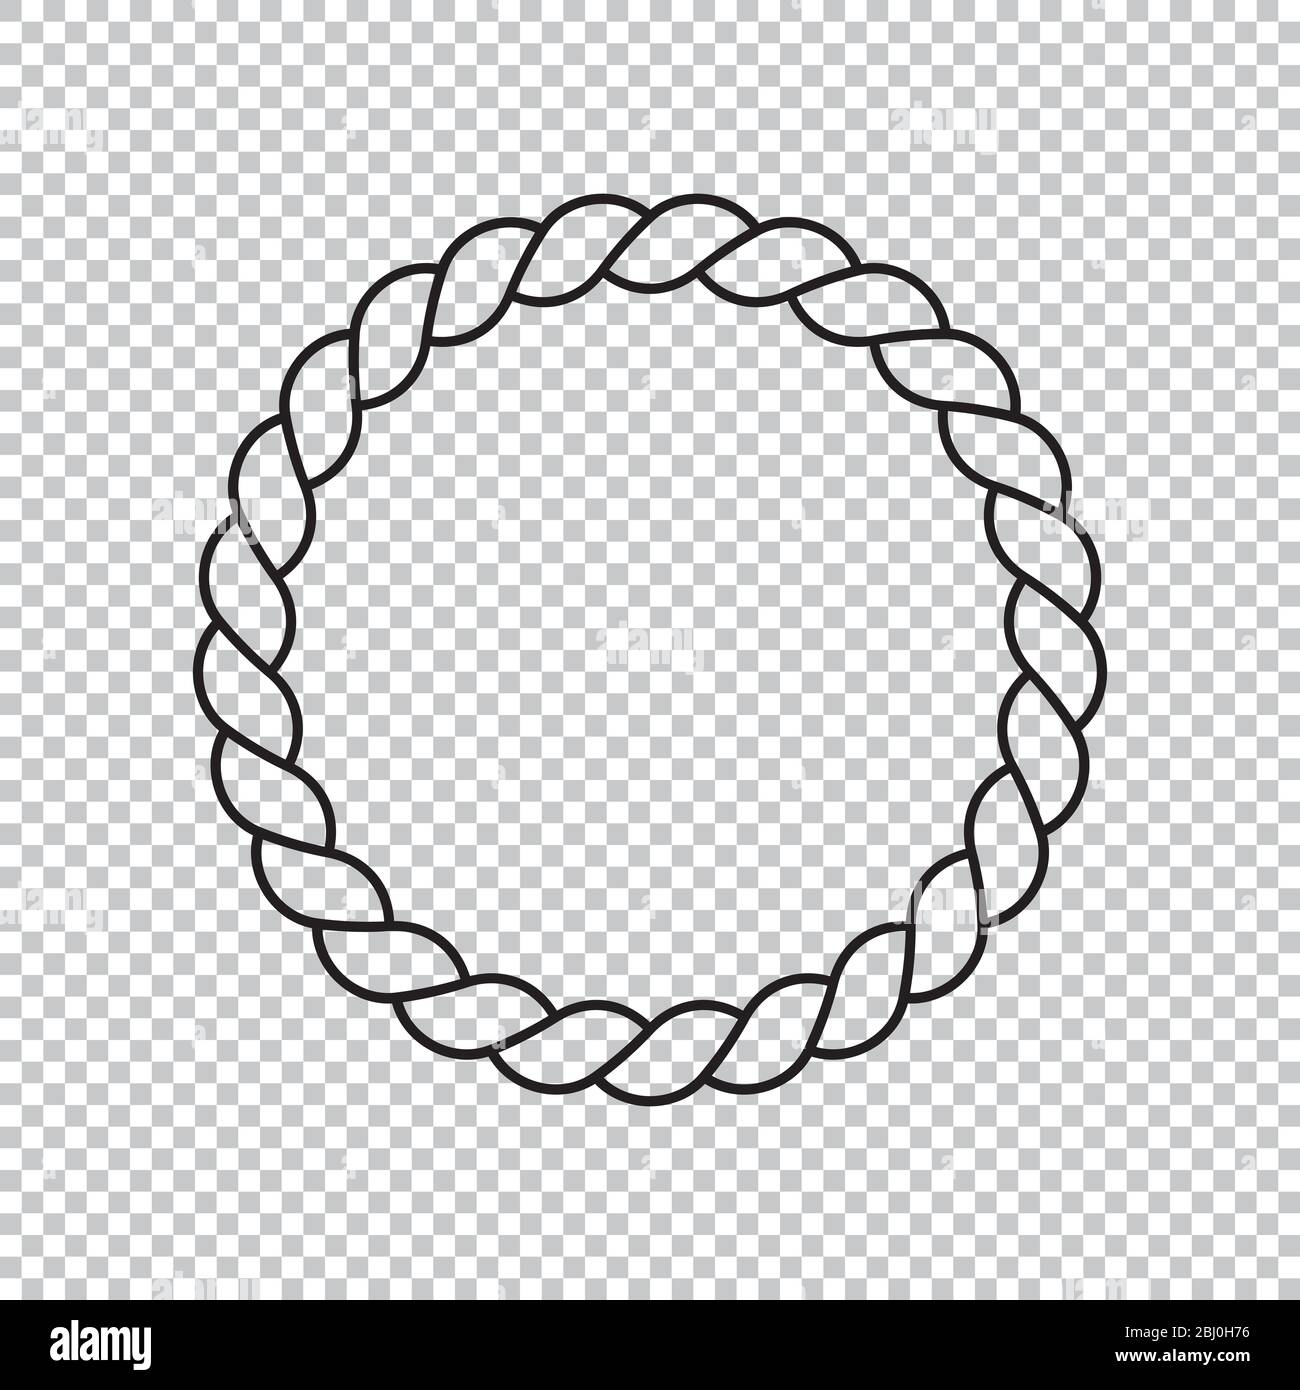 Disegno vettoriale di icona di corda circolare senza sfondo, disegno astratto di forma di corda rotonda con elemento di campitura di linea Illustrazione Vettoriale